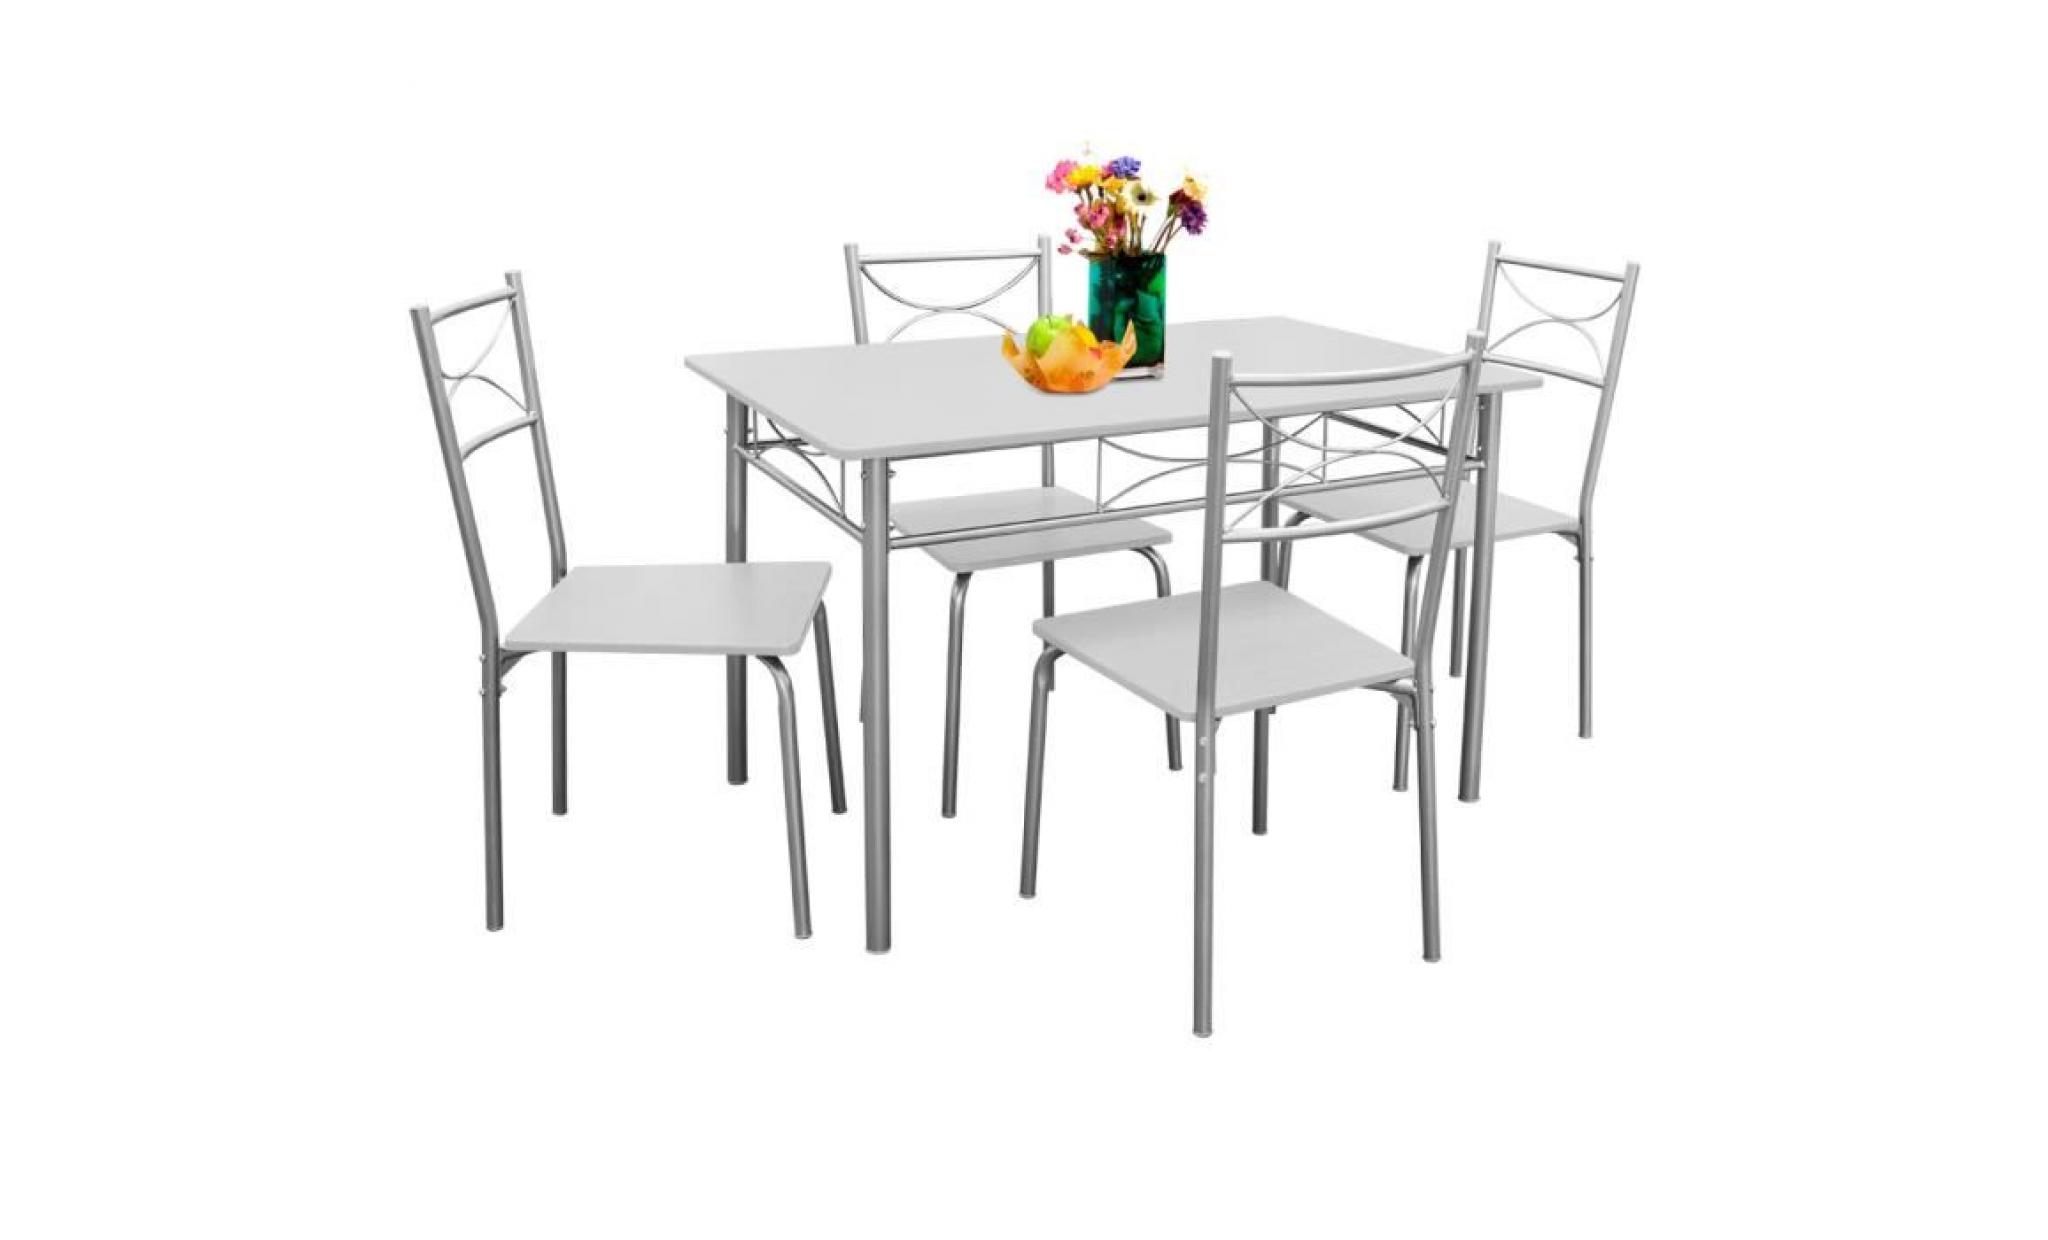 deuba | ensemble paul   salle à manger 5 pièces   1 table et 4 chaises   résistant   couleur blanc écru   cuisine